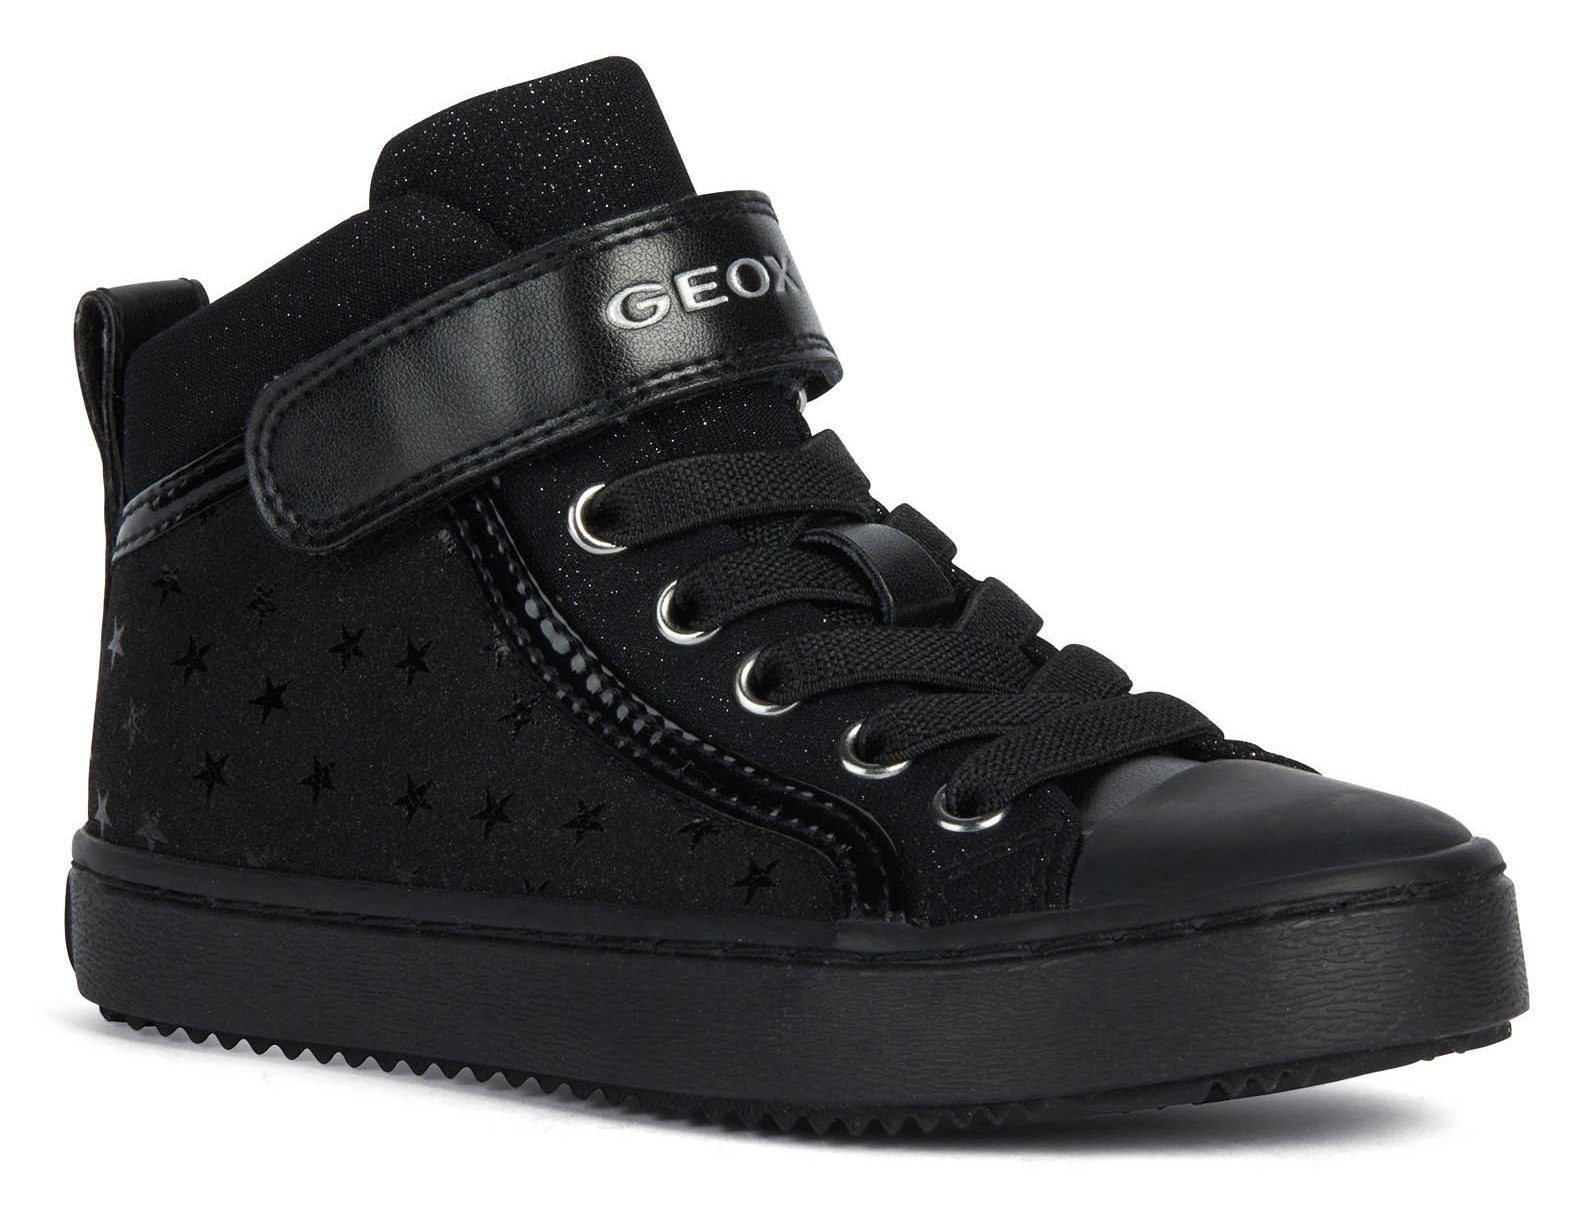 Geox J KALISPERA GIRL Sneaker mit stylischem Sternenmuster schwarz